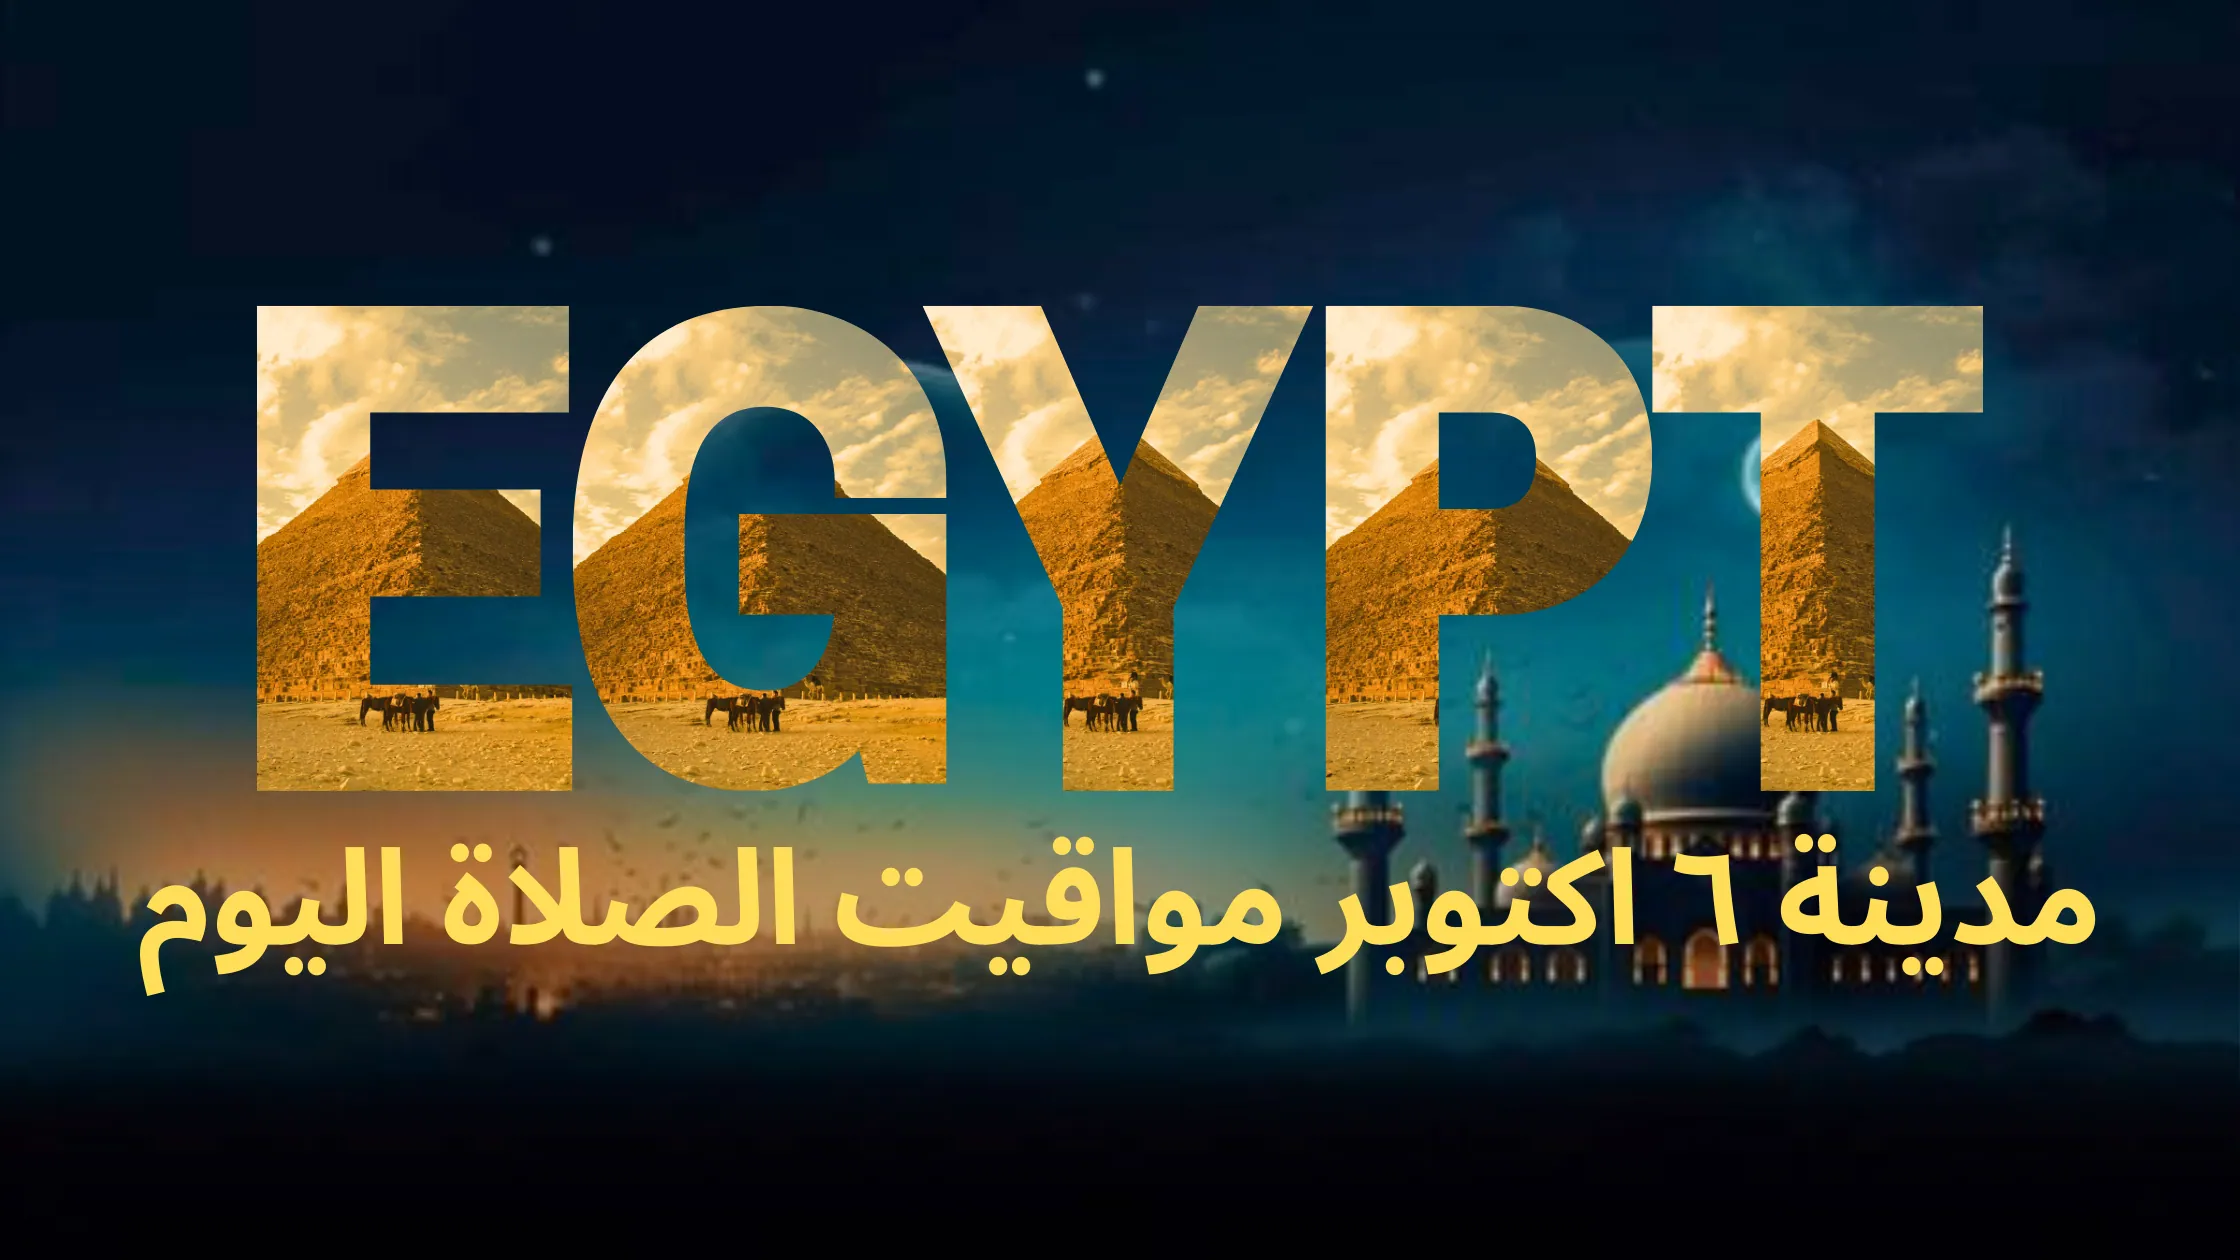 نص مكتوب بالخط العربي "مصر" متبوعًا بالنص العربي "مدينة ٦ اكتوبر مواقيت الصلاة لهذا اليوم"